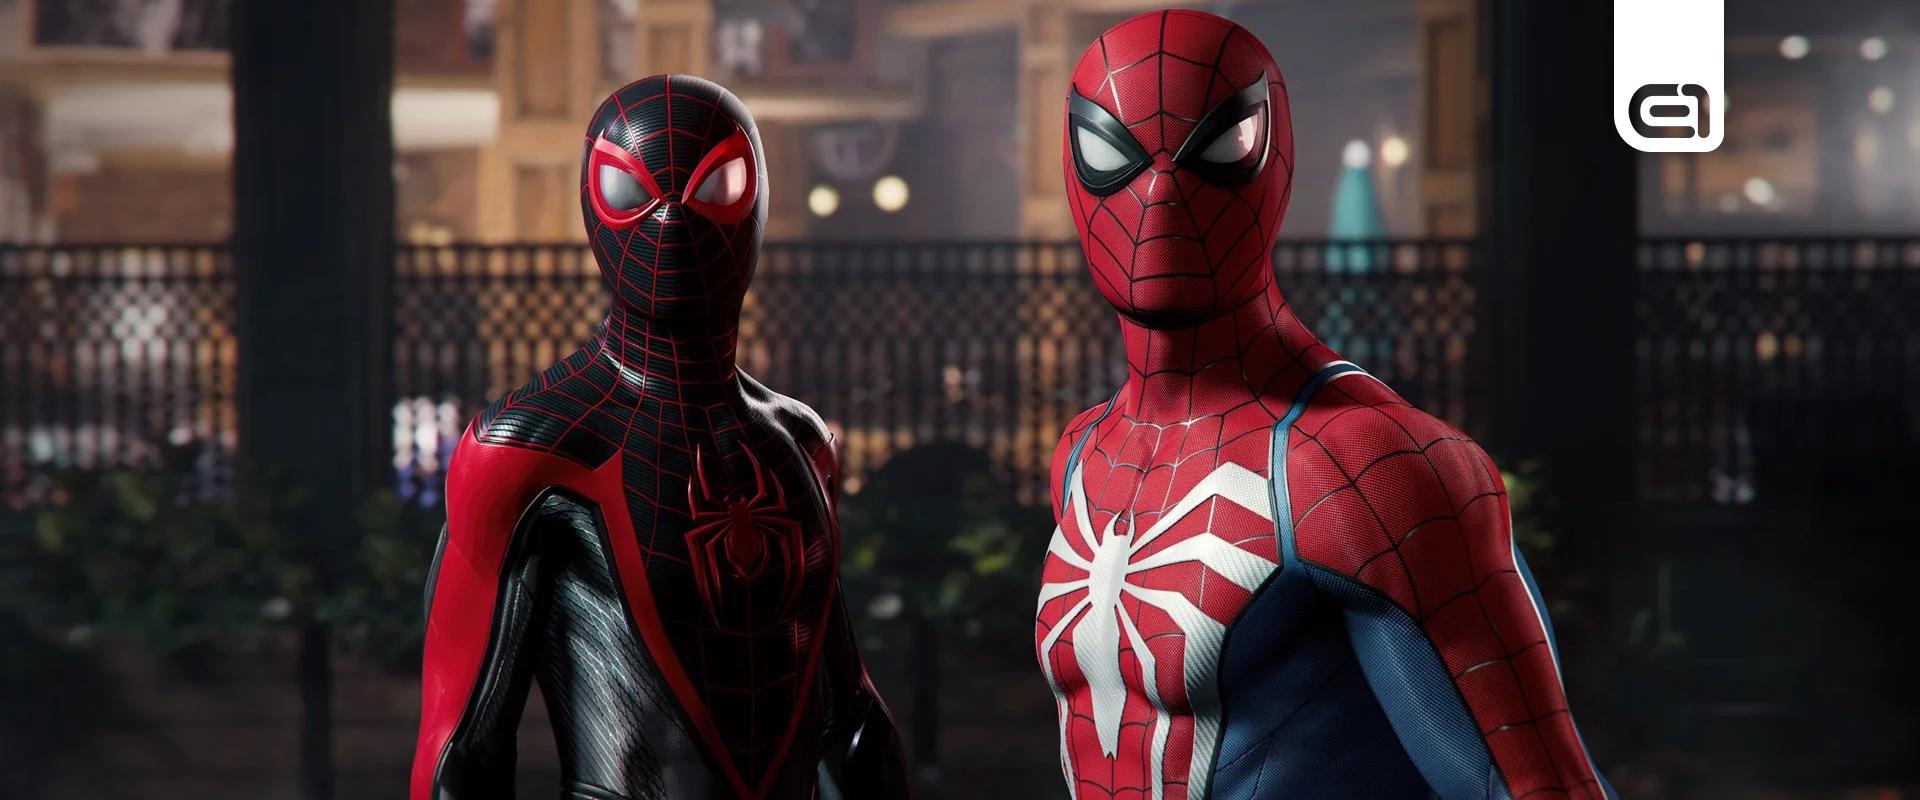 Eldőlt, hogy ki lesz a főszereplője a következő Marvel's Spider-Man játékoknak